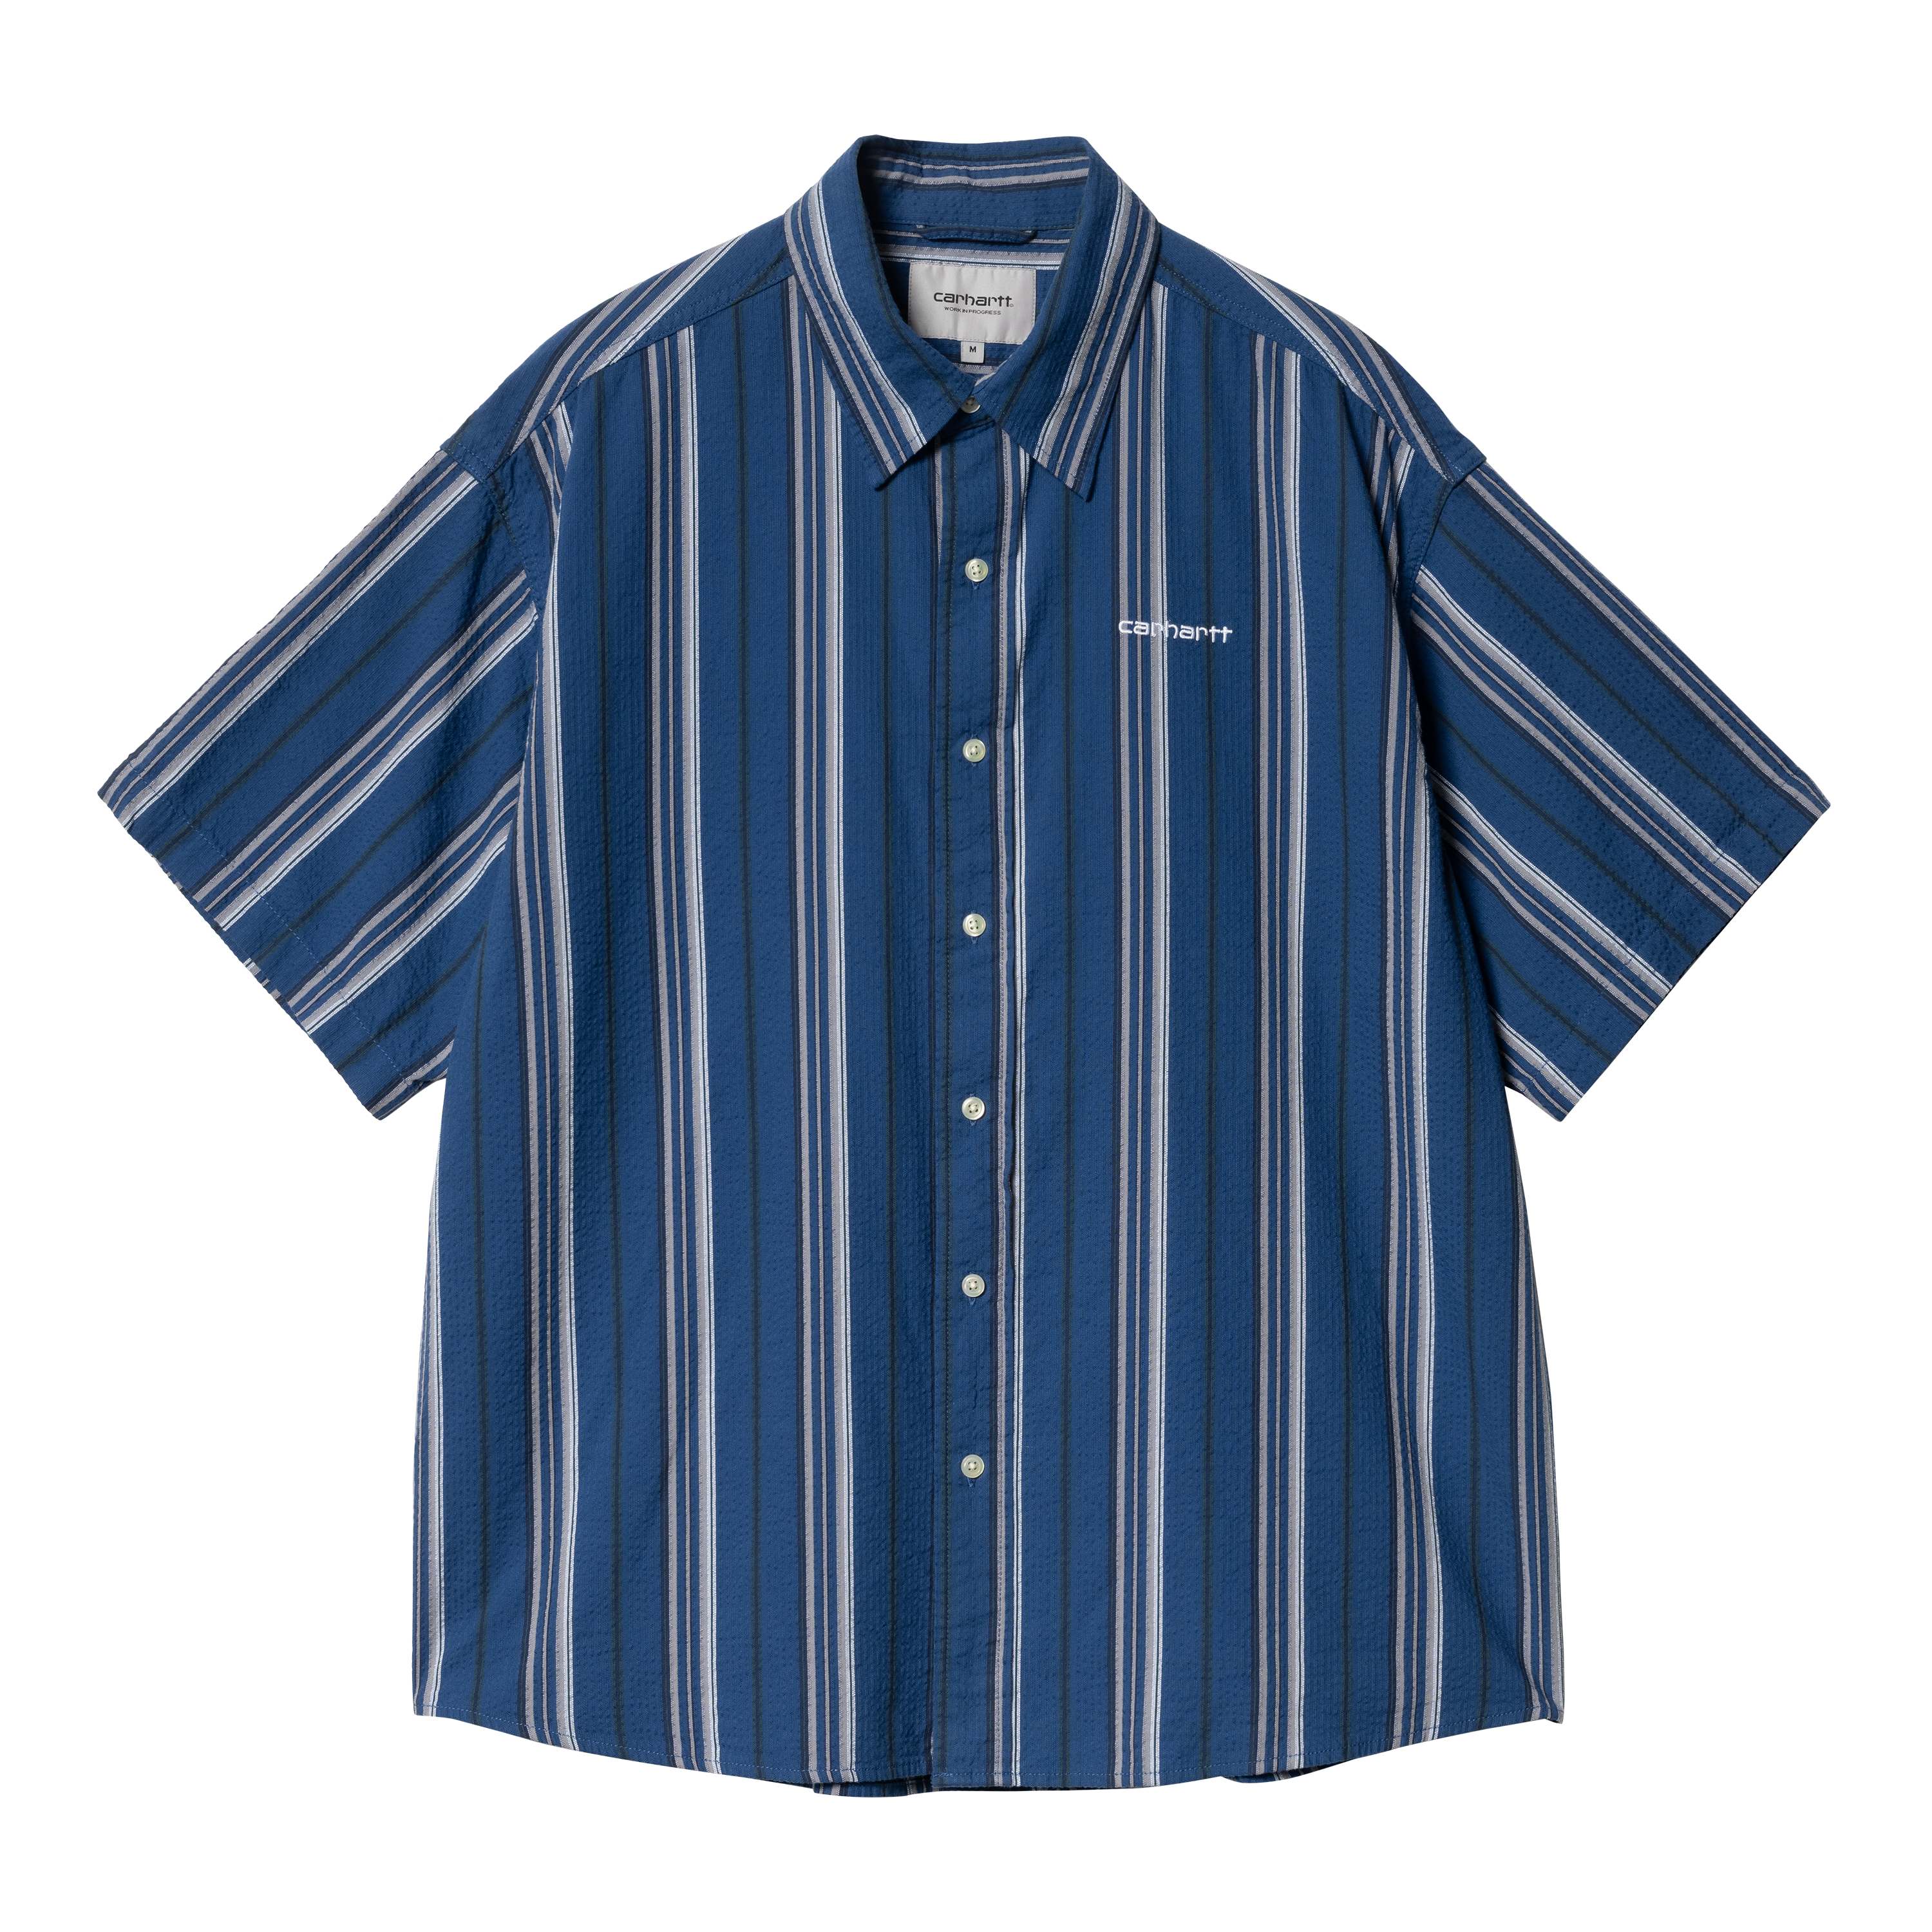 Carhartt WIP Short Sleeve Quentin Shirt in Blau